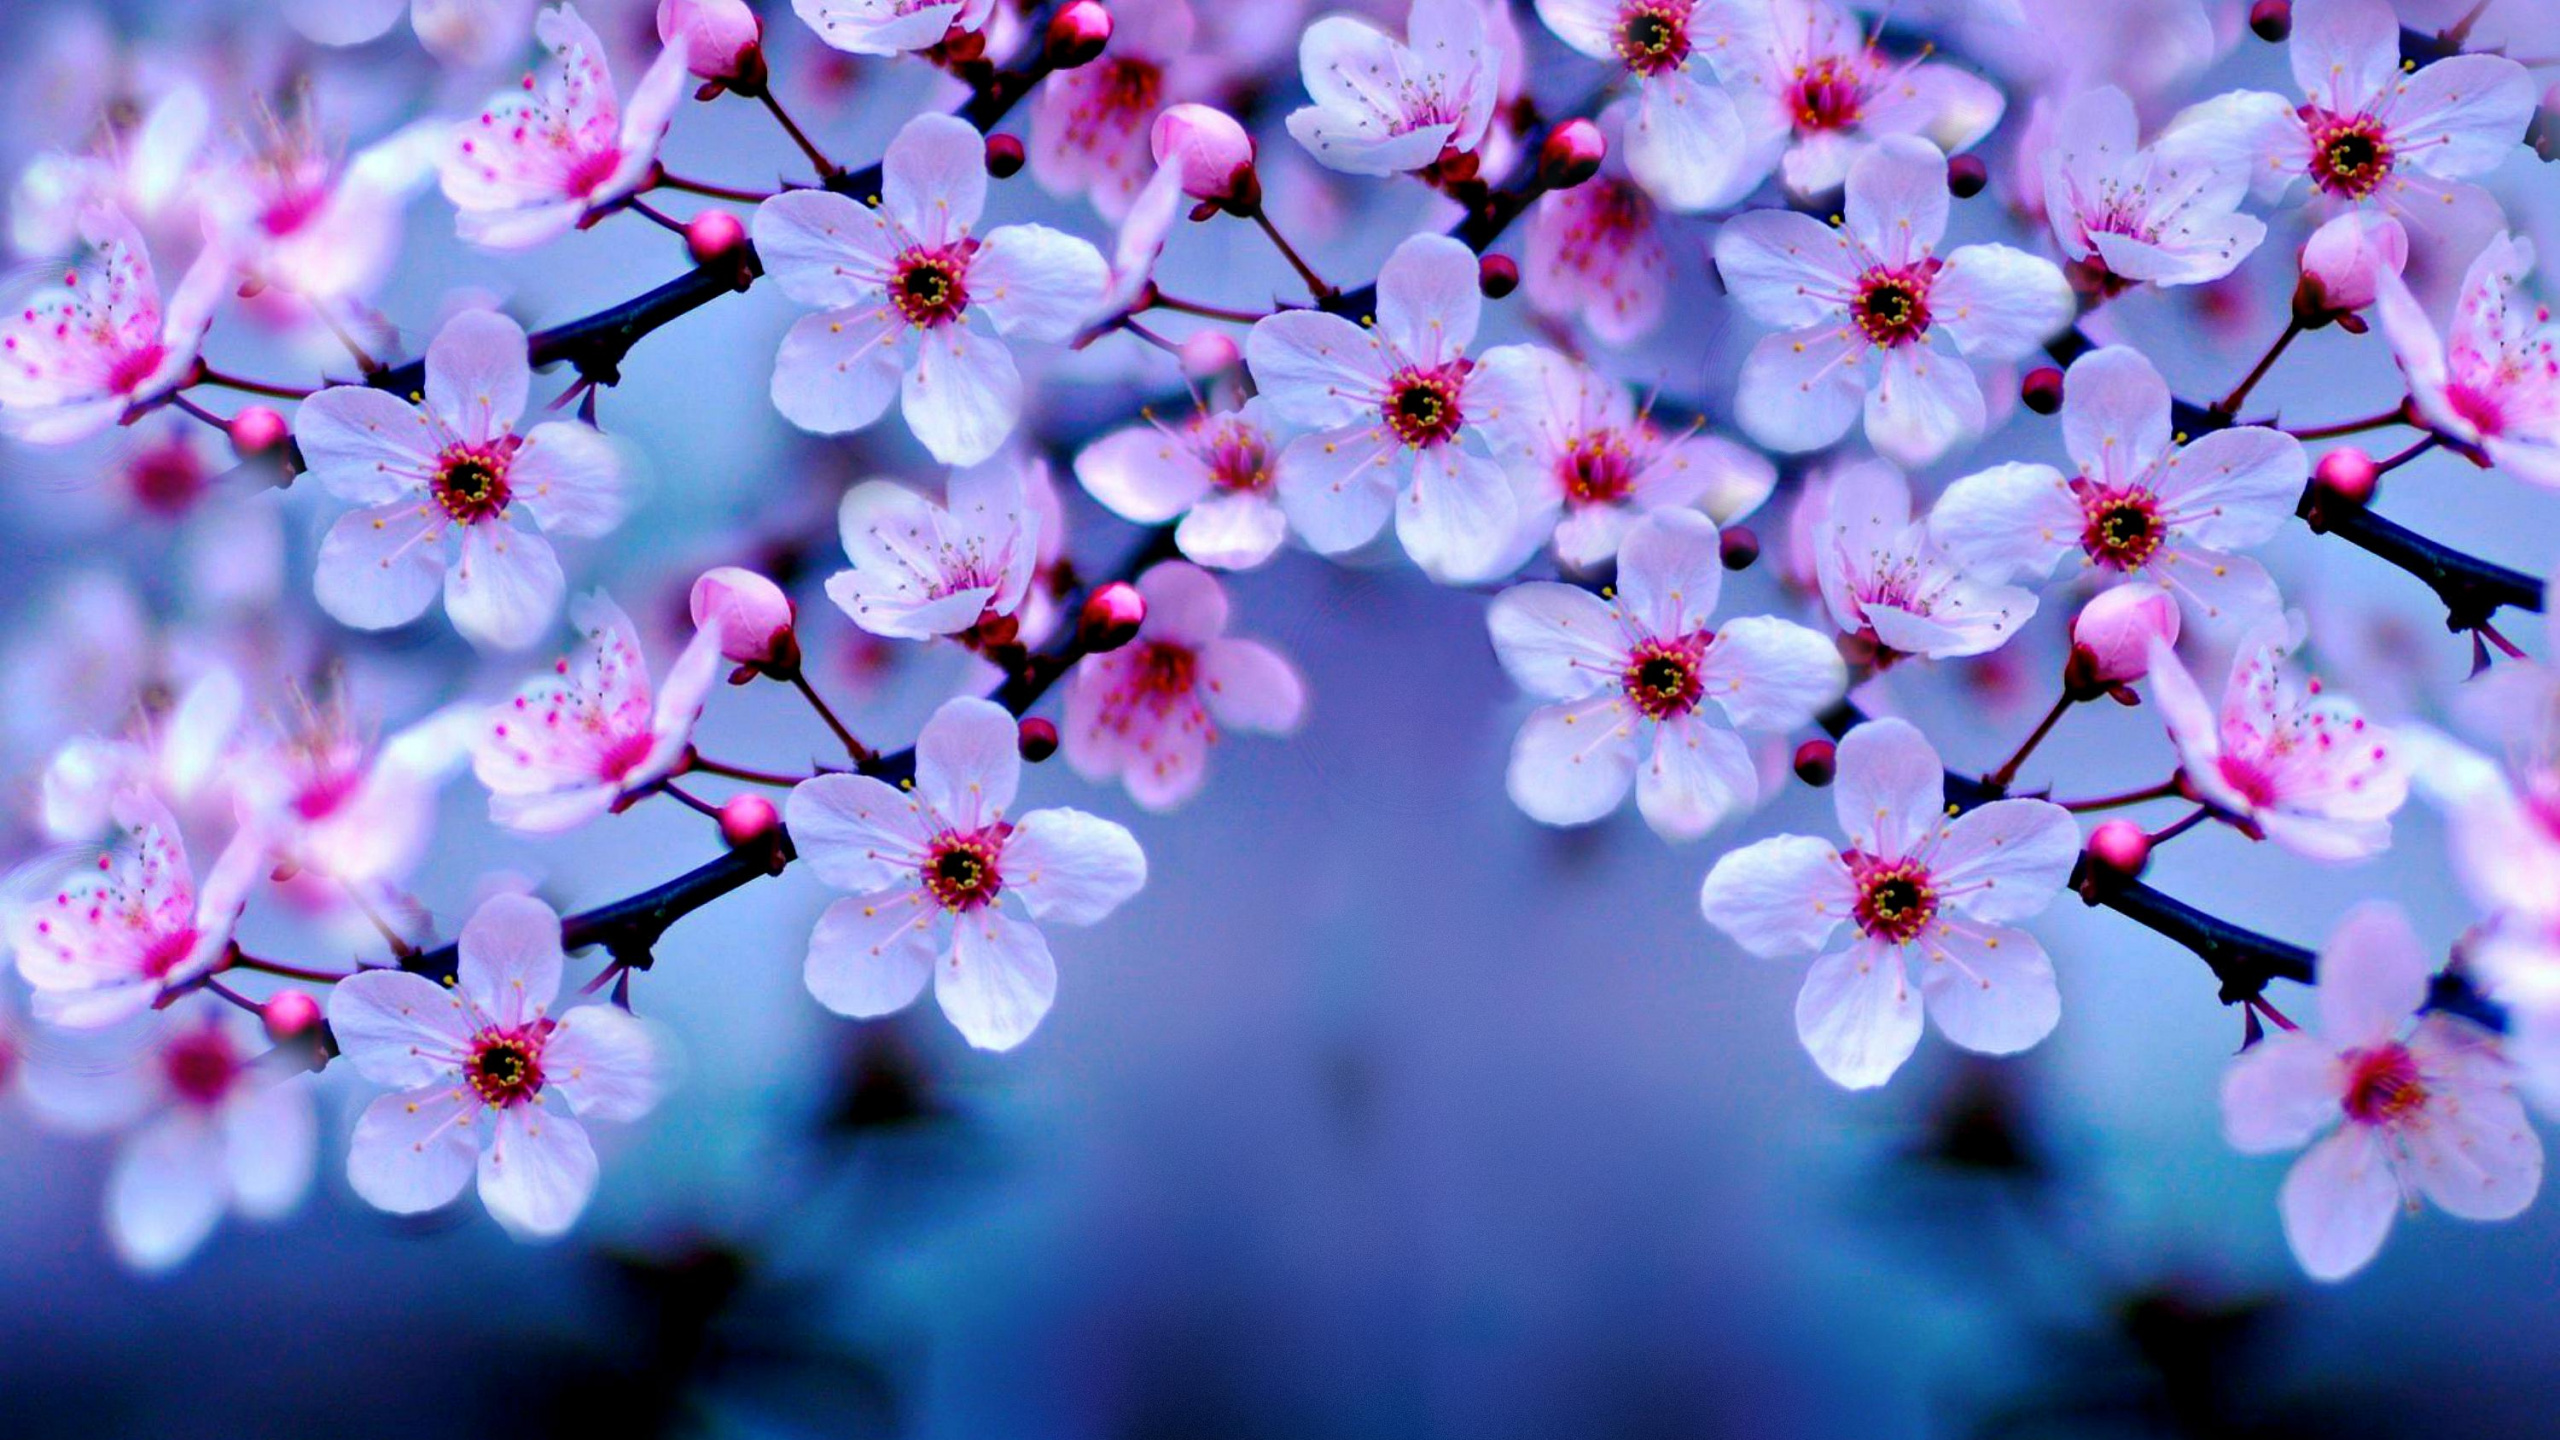 樱花, 开花, 粉红色, 弹簧, 紫色的 壁纸 2560x1440 允许